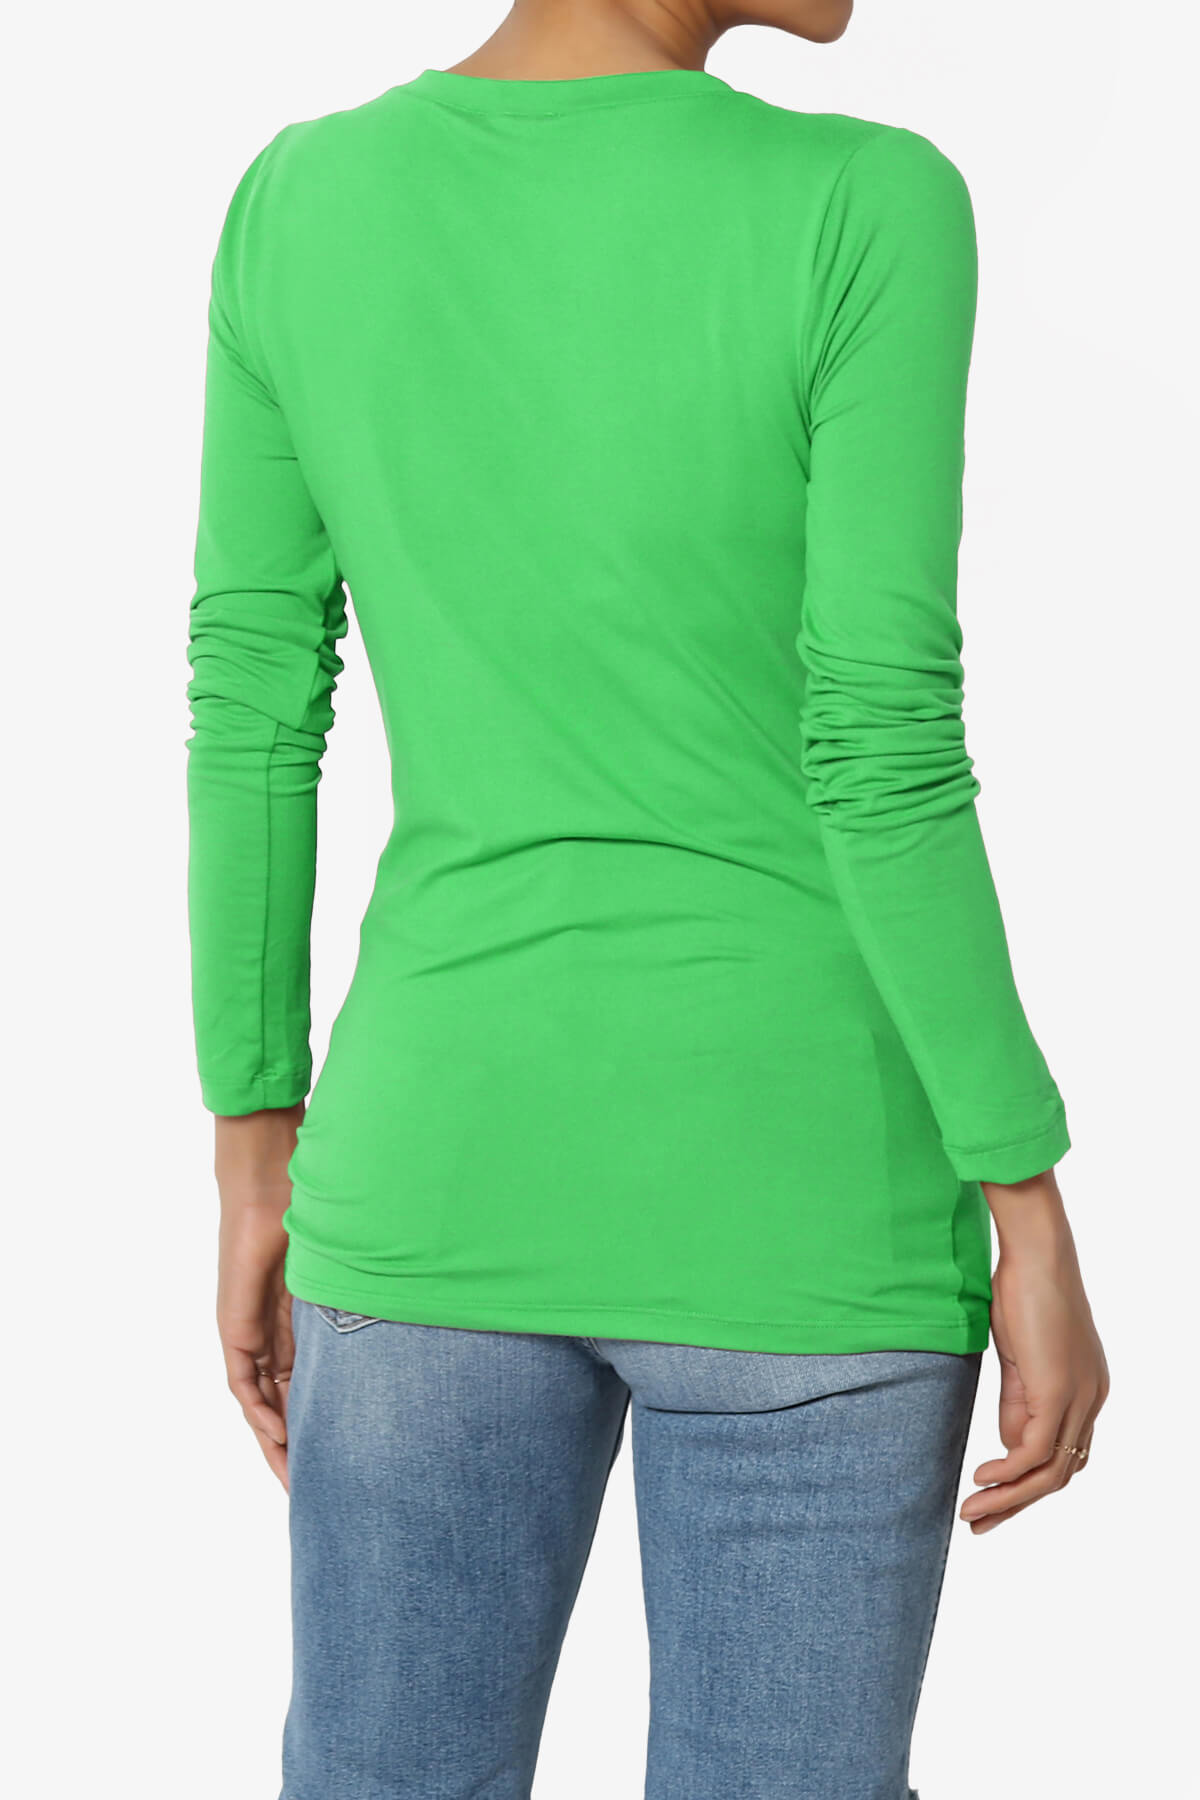 Women's Short Sleeve Relaxed Scoop Neck T-shirt - Ava & Viv™ Olive